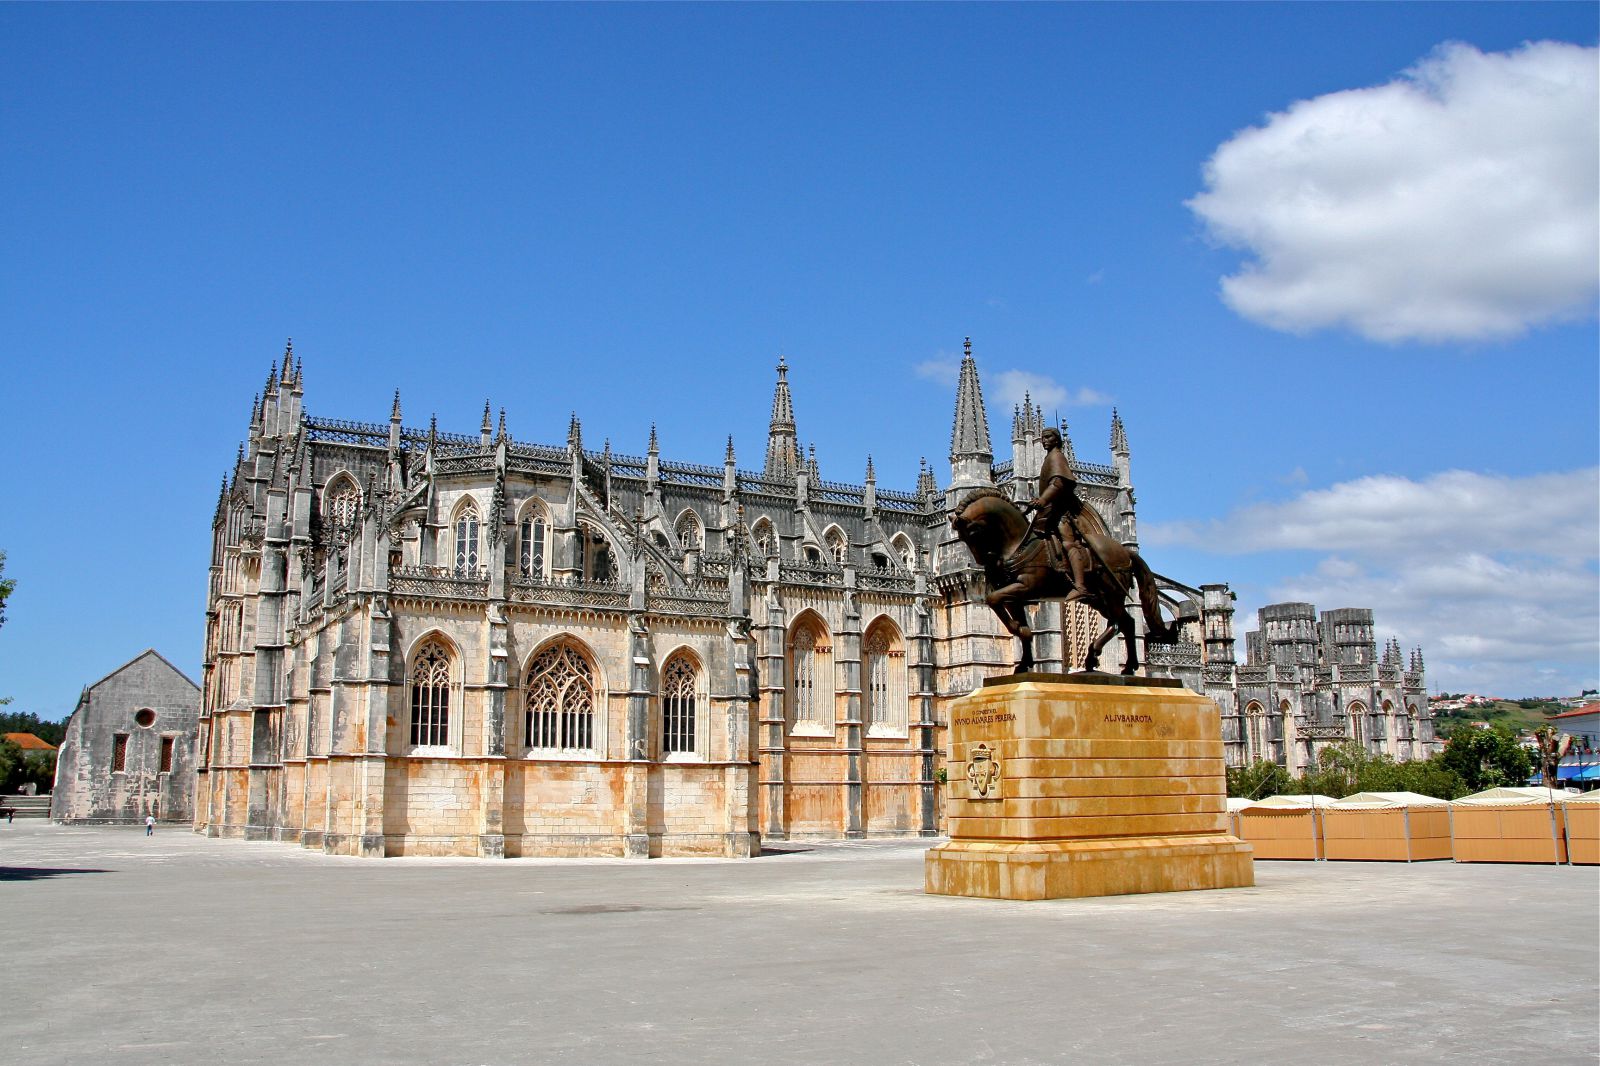 Памятник королю Жуау и монастырь - Баталья, Португалия фото #32818